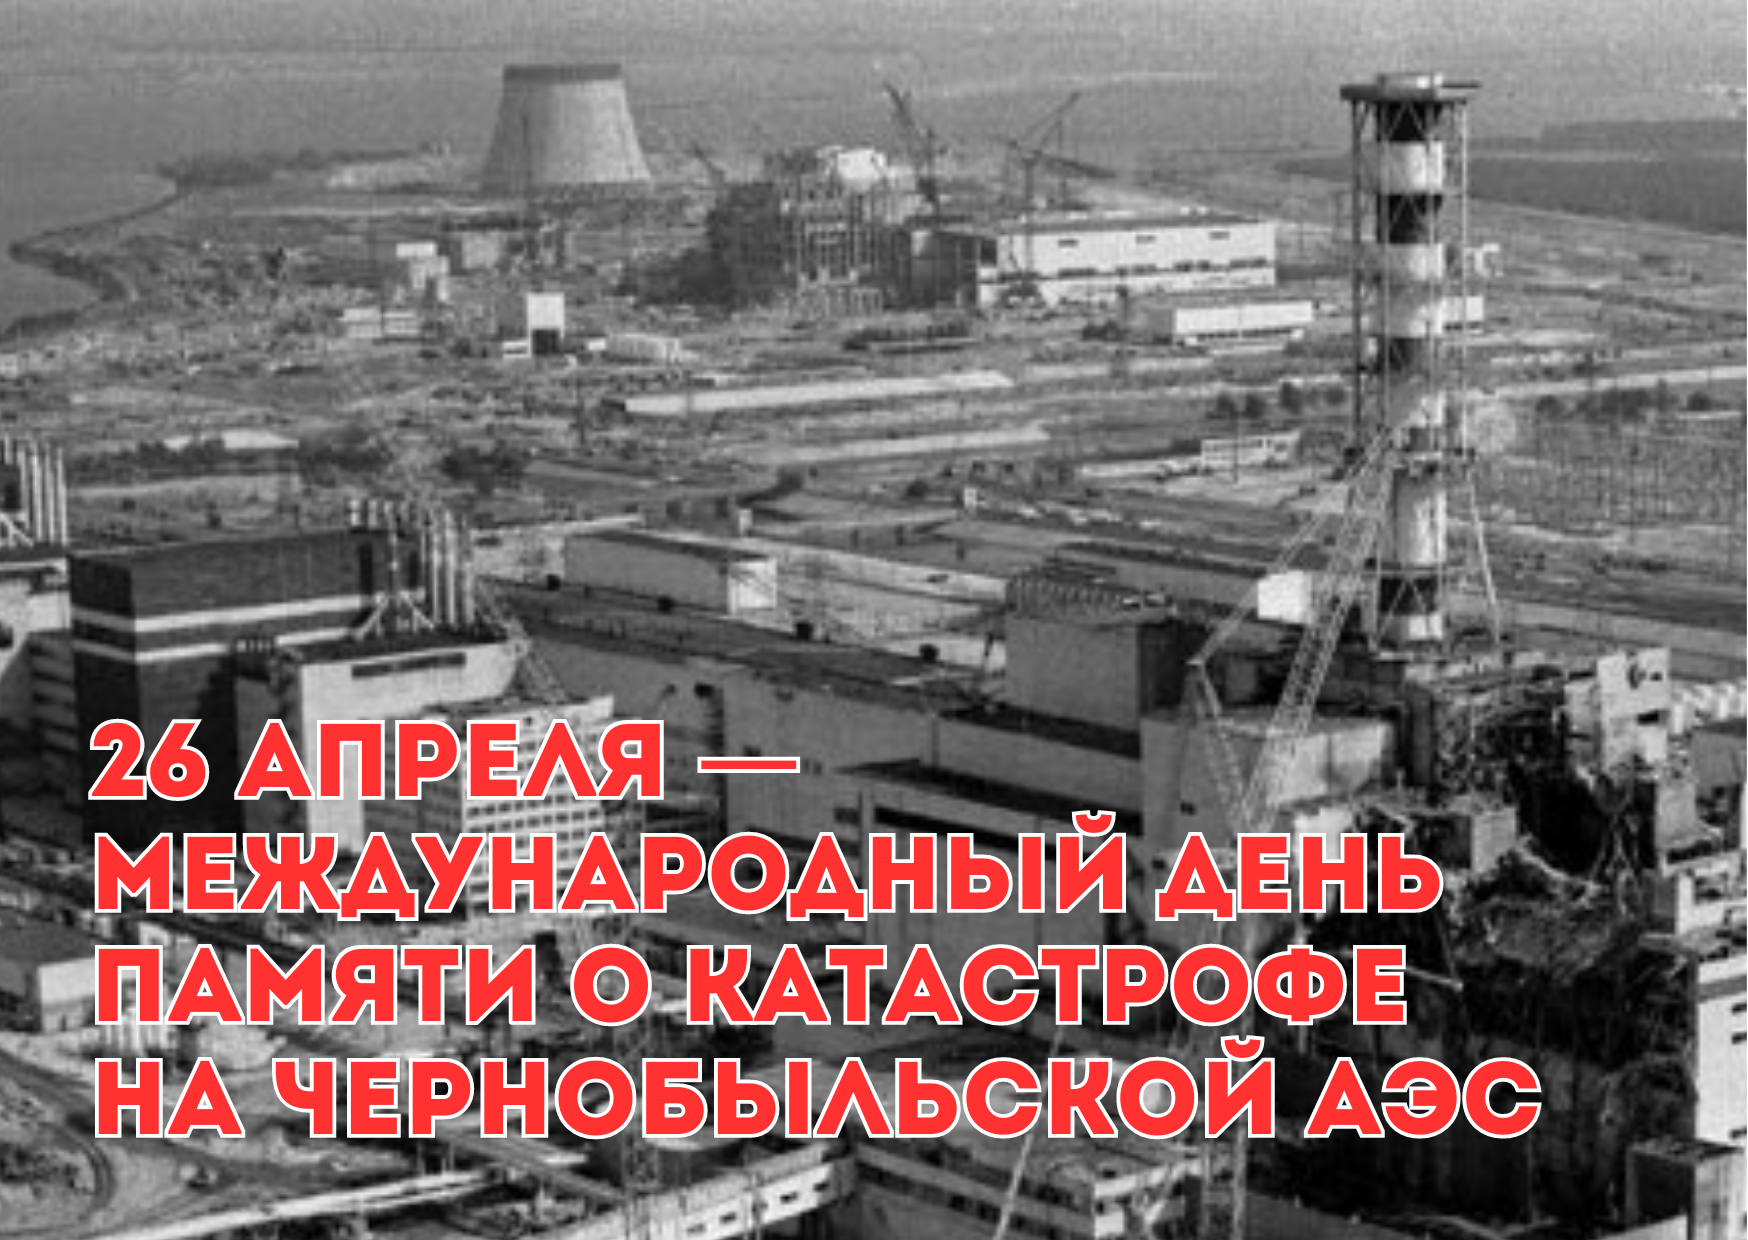 Катастрофа на Чернобыльской АЭС..